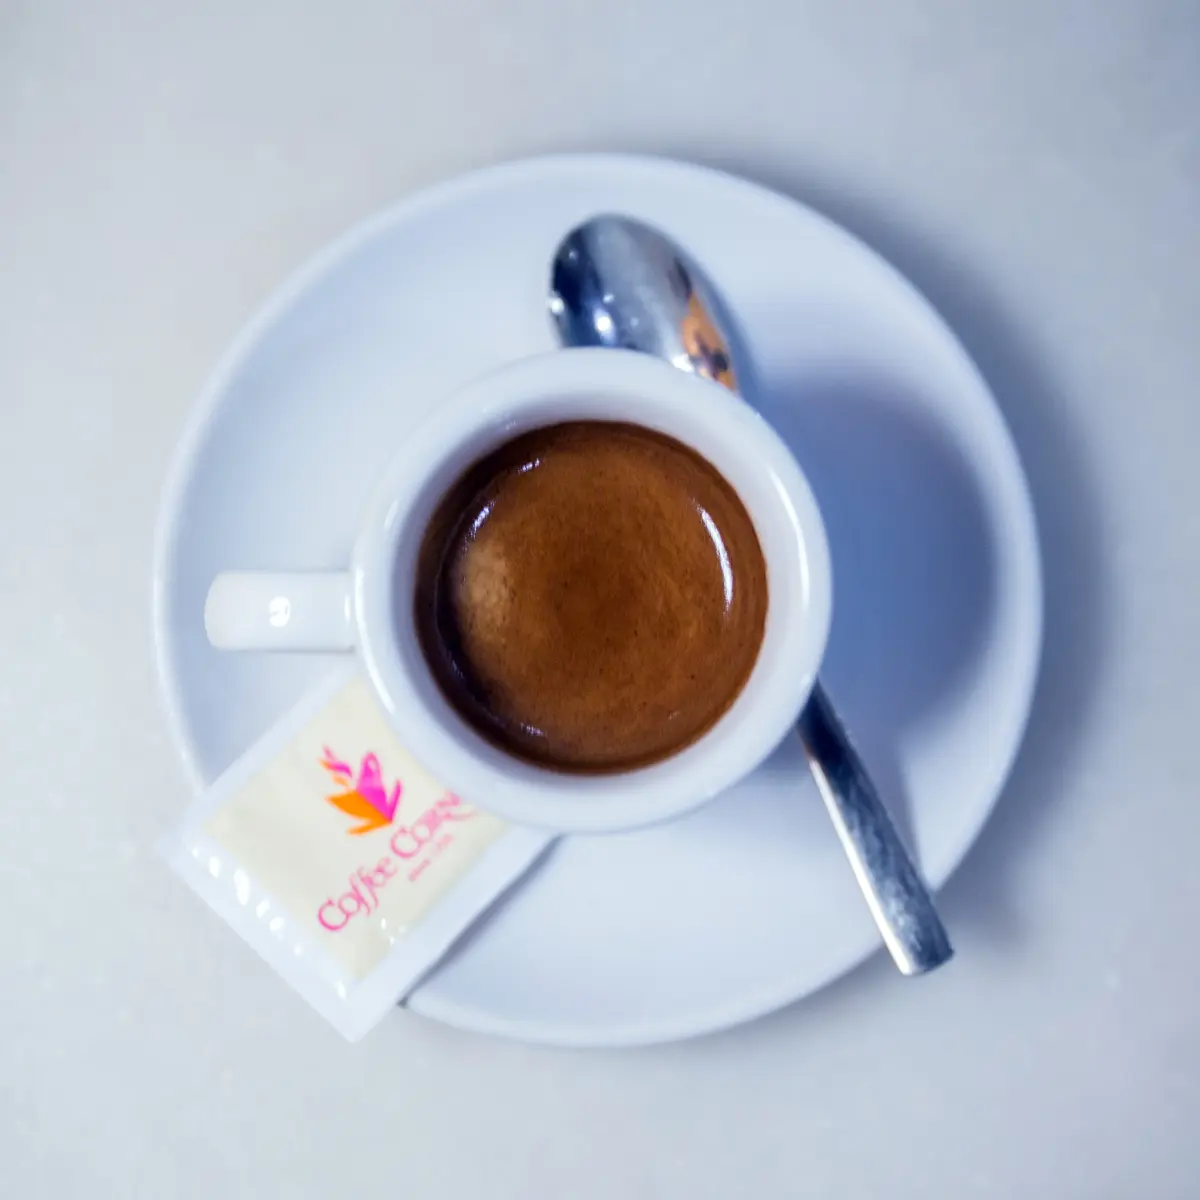 cuanto cuesta un cafe en suiza - Cómo se dice café con leche en Suiza